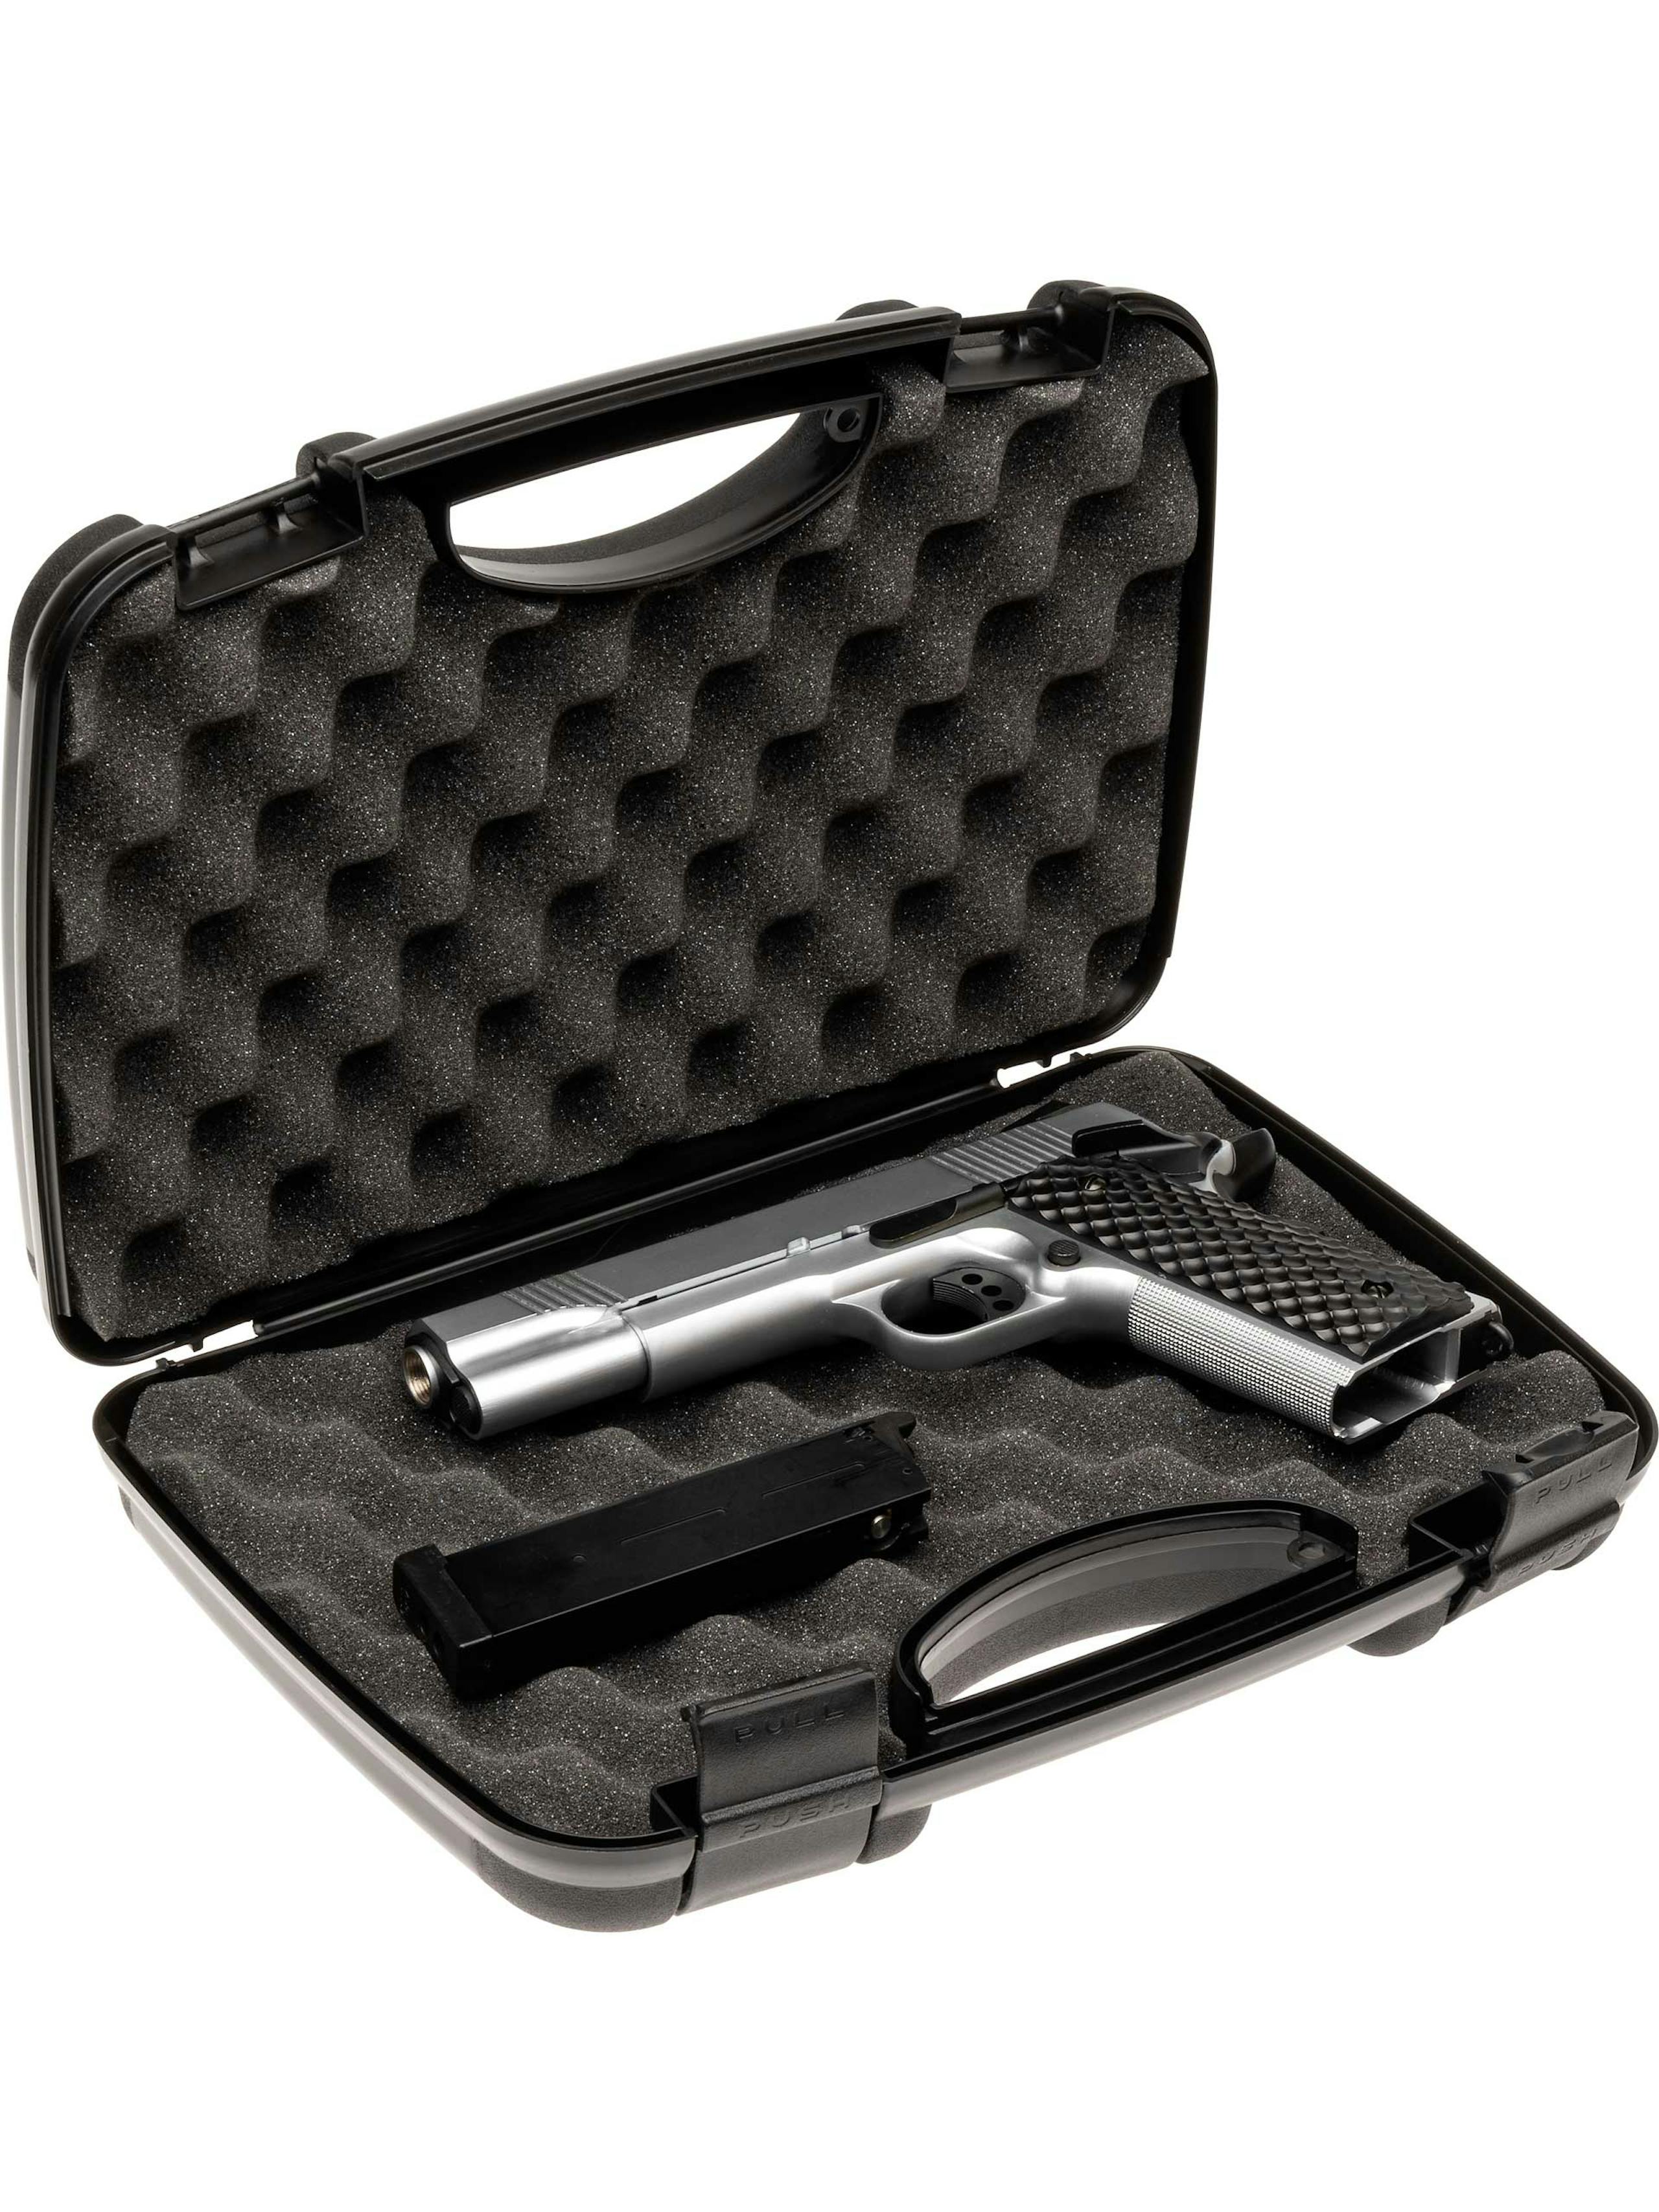 Evolution Airsoft Pistol Hard Case Internal Size 30.5x18.5x8.5